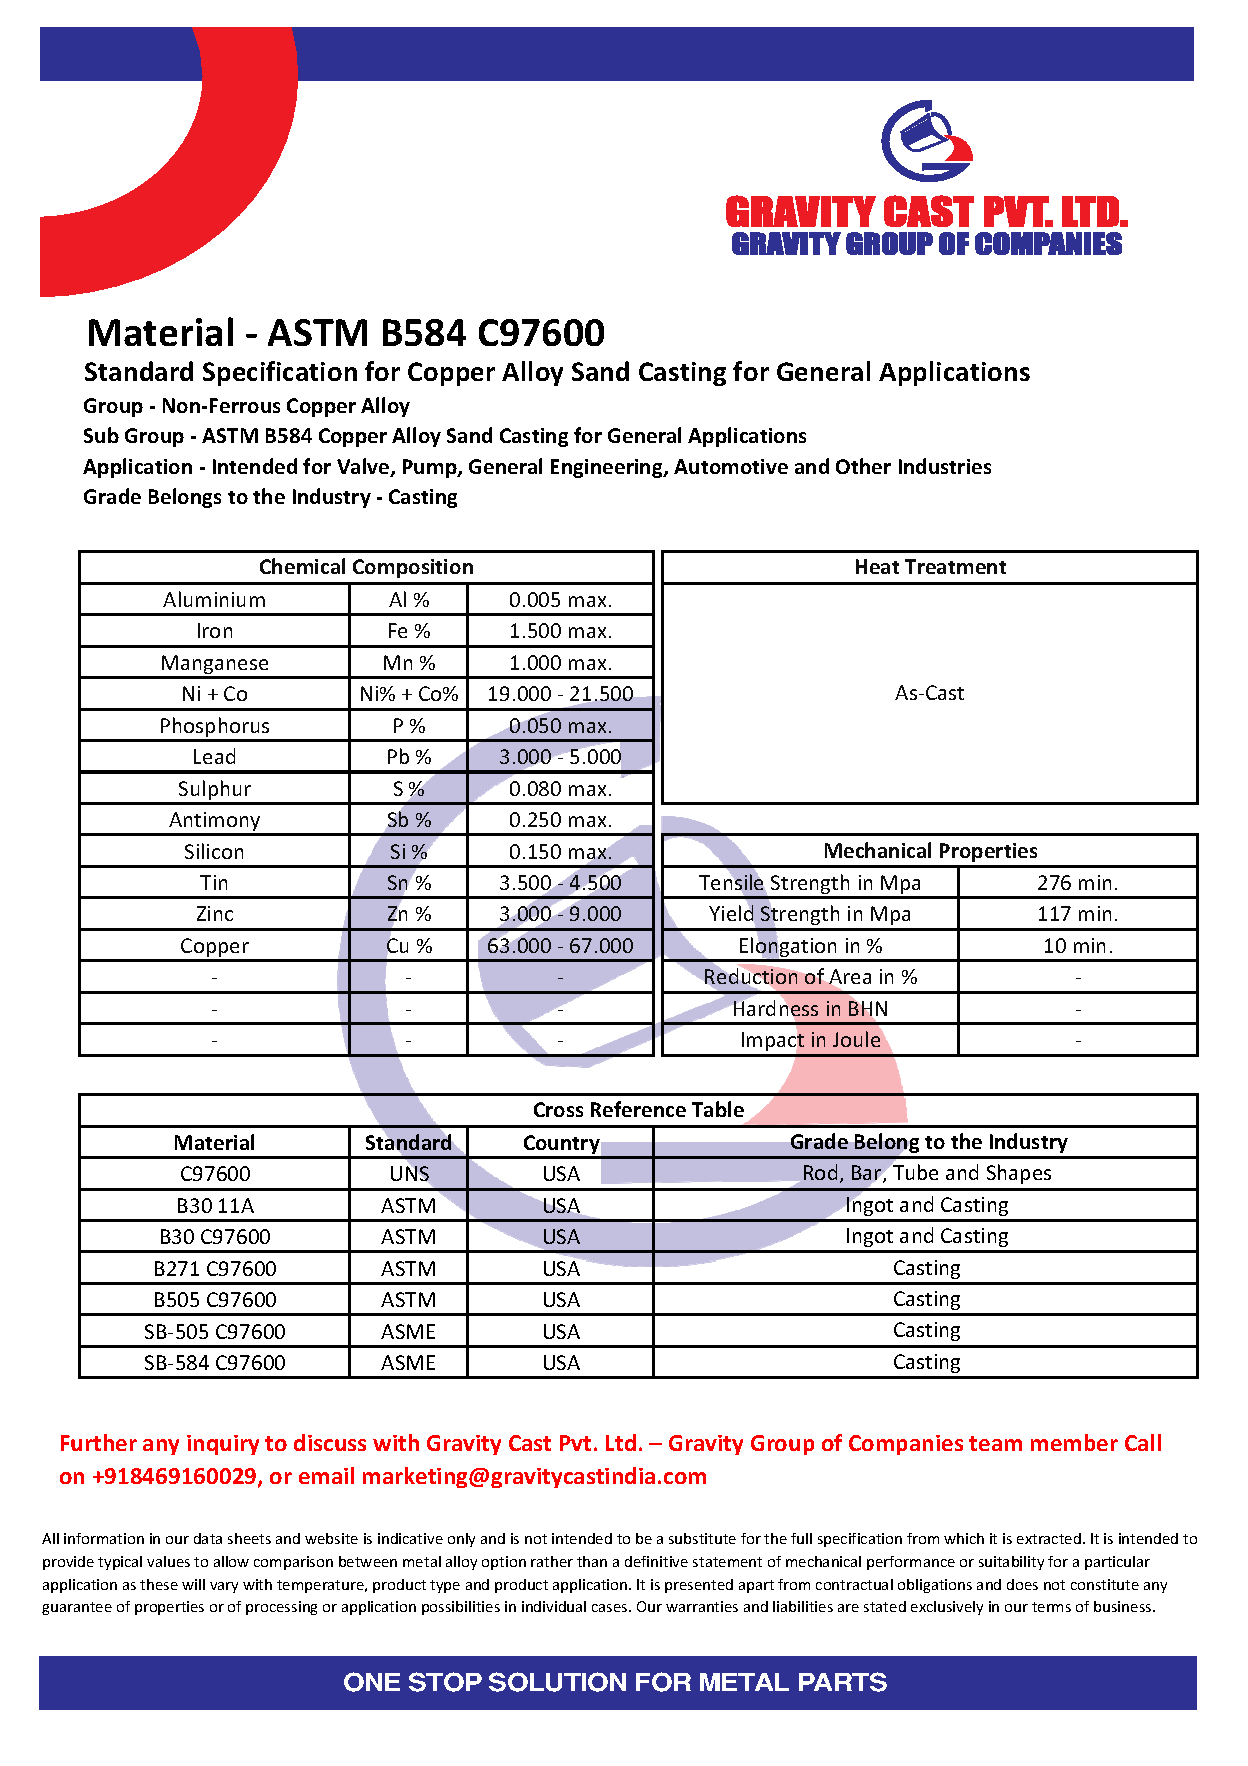 ASTM B584 C97600.pdf